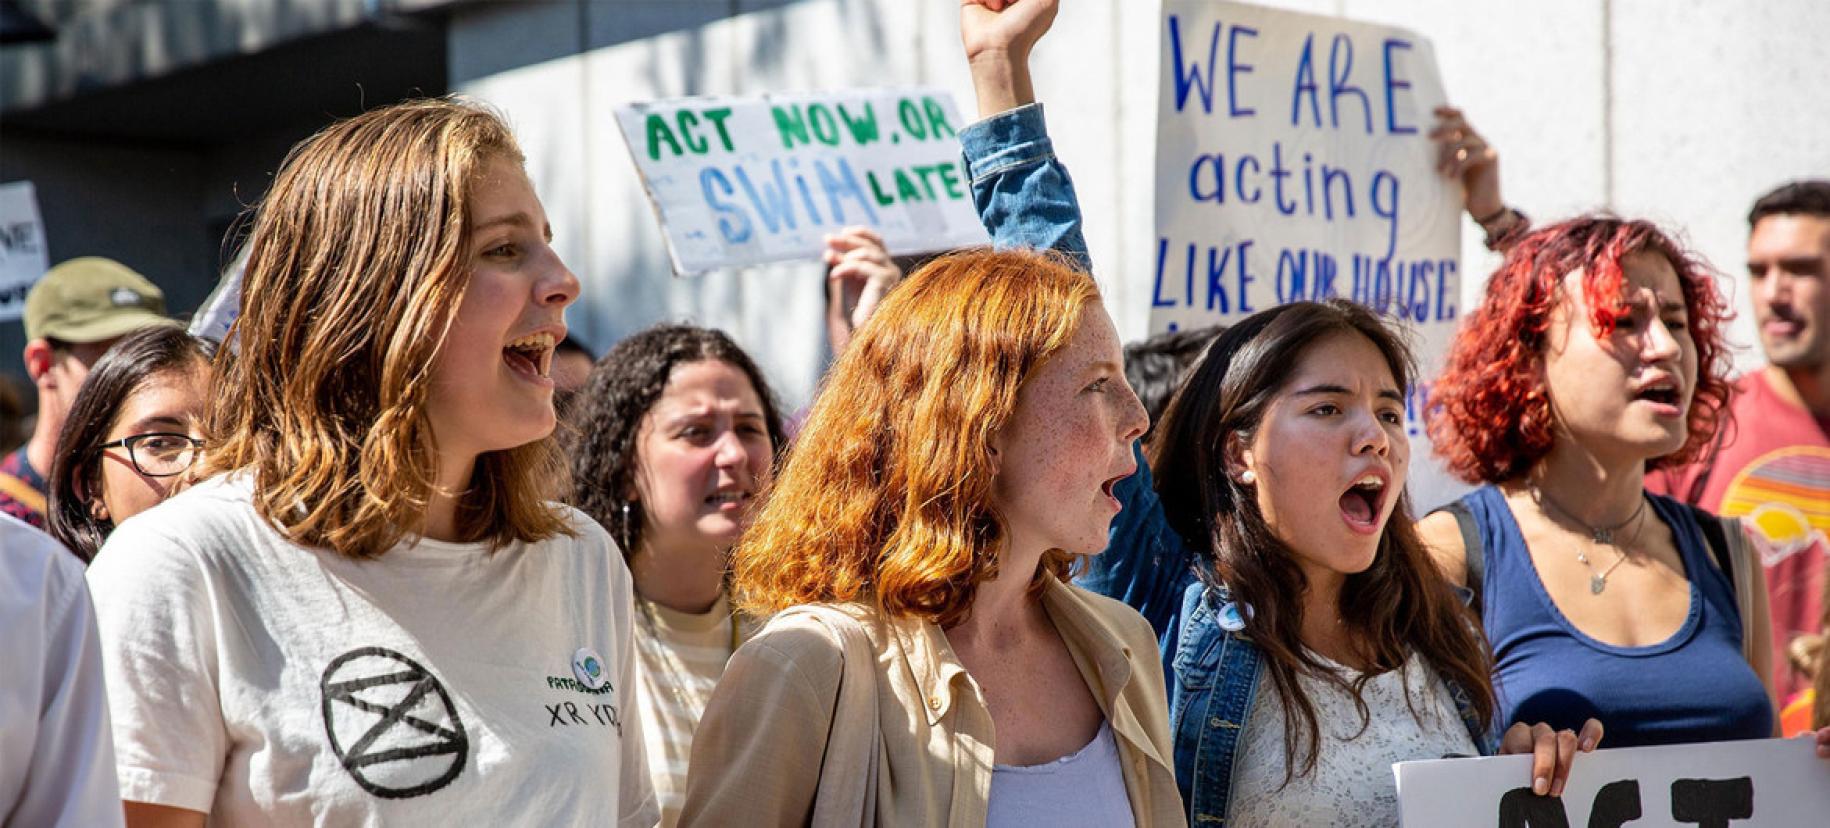 Dans le cadre des grèves scolaires organisées par Fridays for Future, des jeunes protestent pour l'action climatique à New York, en août 2019.